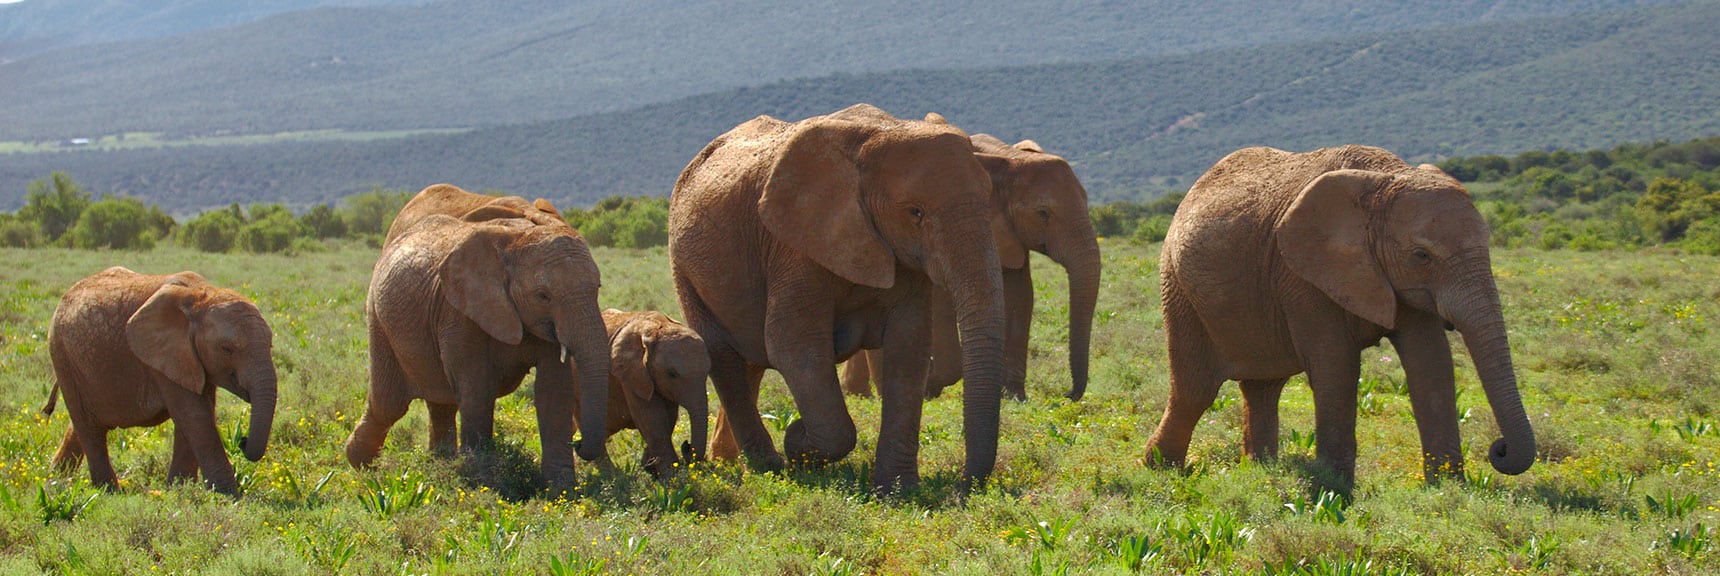 Addo Elephant National Park, South Africa Ecotourism